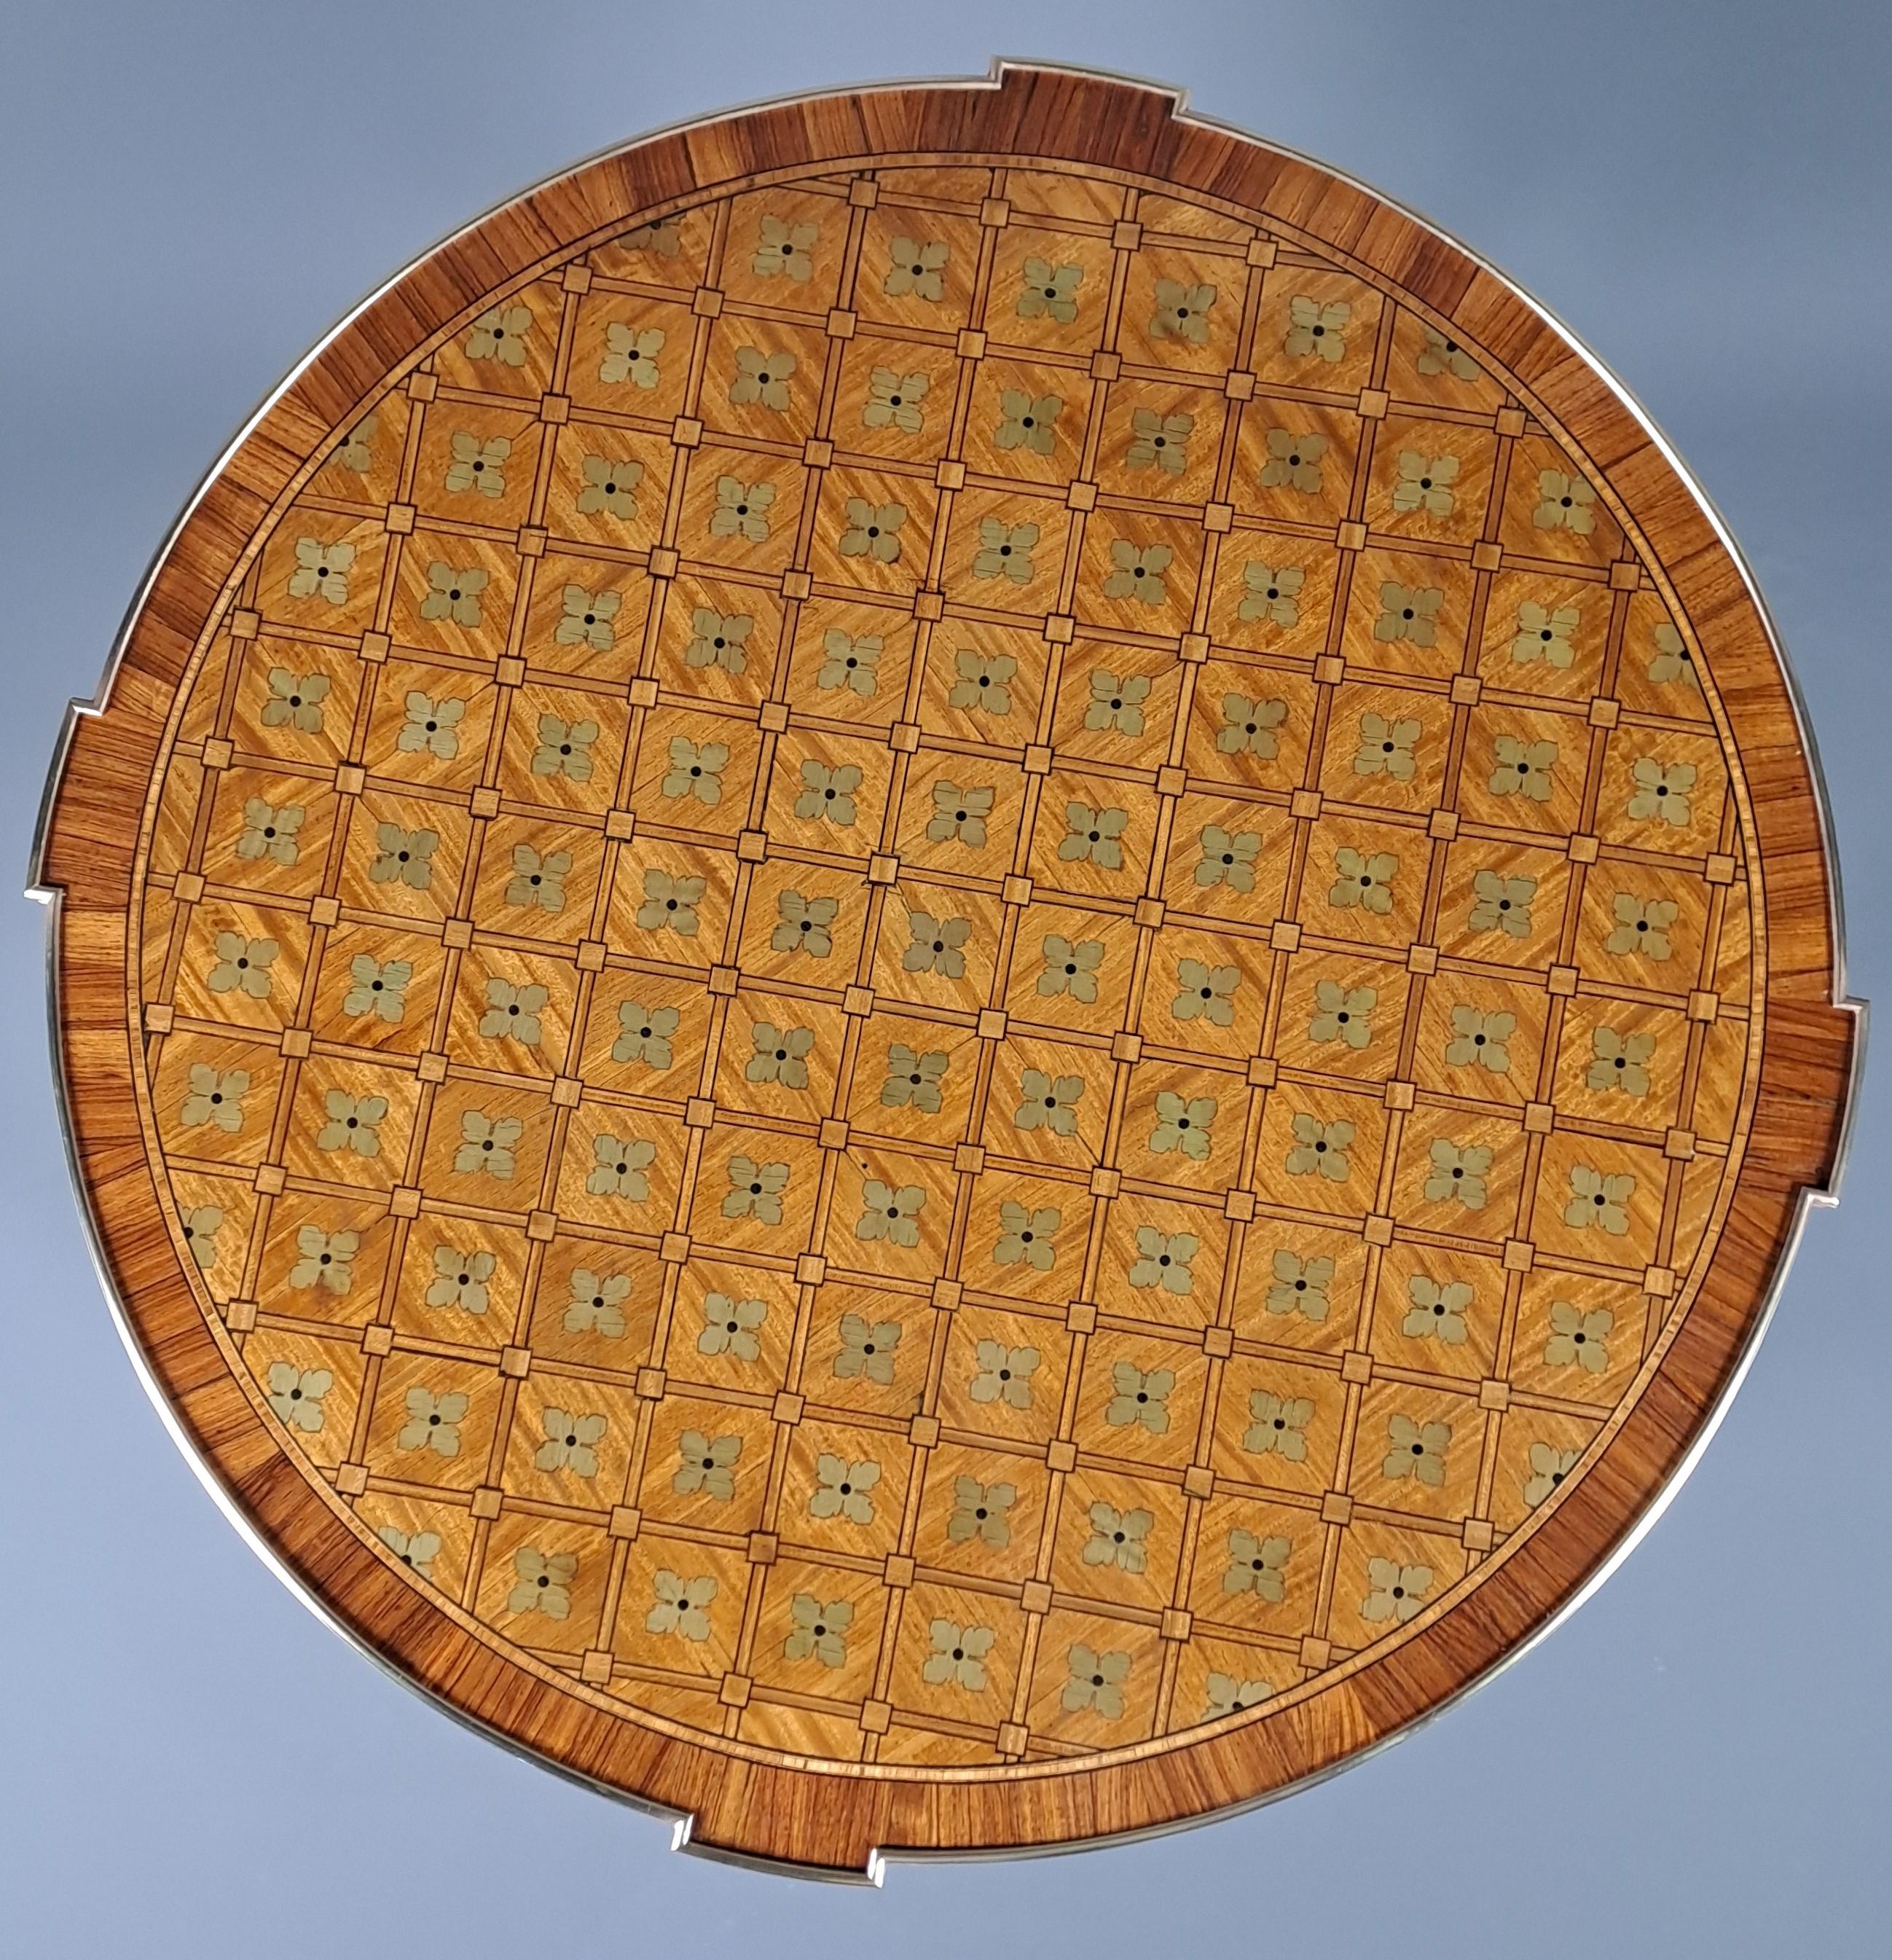 Sehr eleganter Sockeltisch im Louis XVI-Stil mit eingelegtem Quartefeuille-Dekor, das auf der Platte in Schachbrettmuster und auf dem Gürtel in Ringen dargestellt ist.

Beachten Sie die Vorsprünge bis zum Plateau direkt über den vier ummantelten